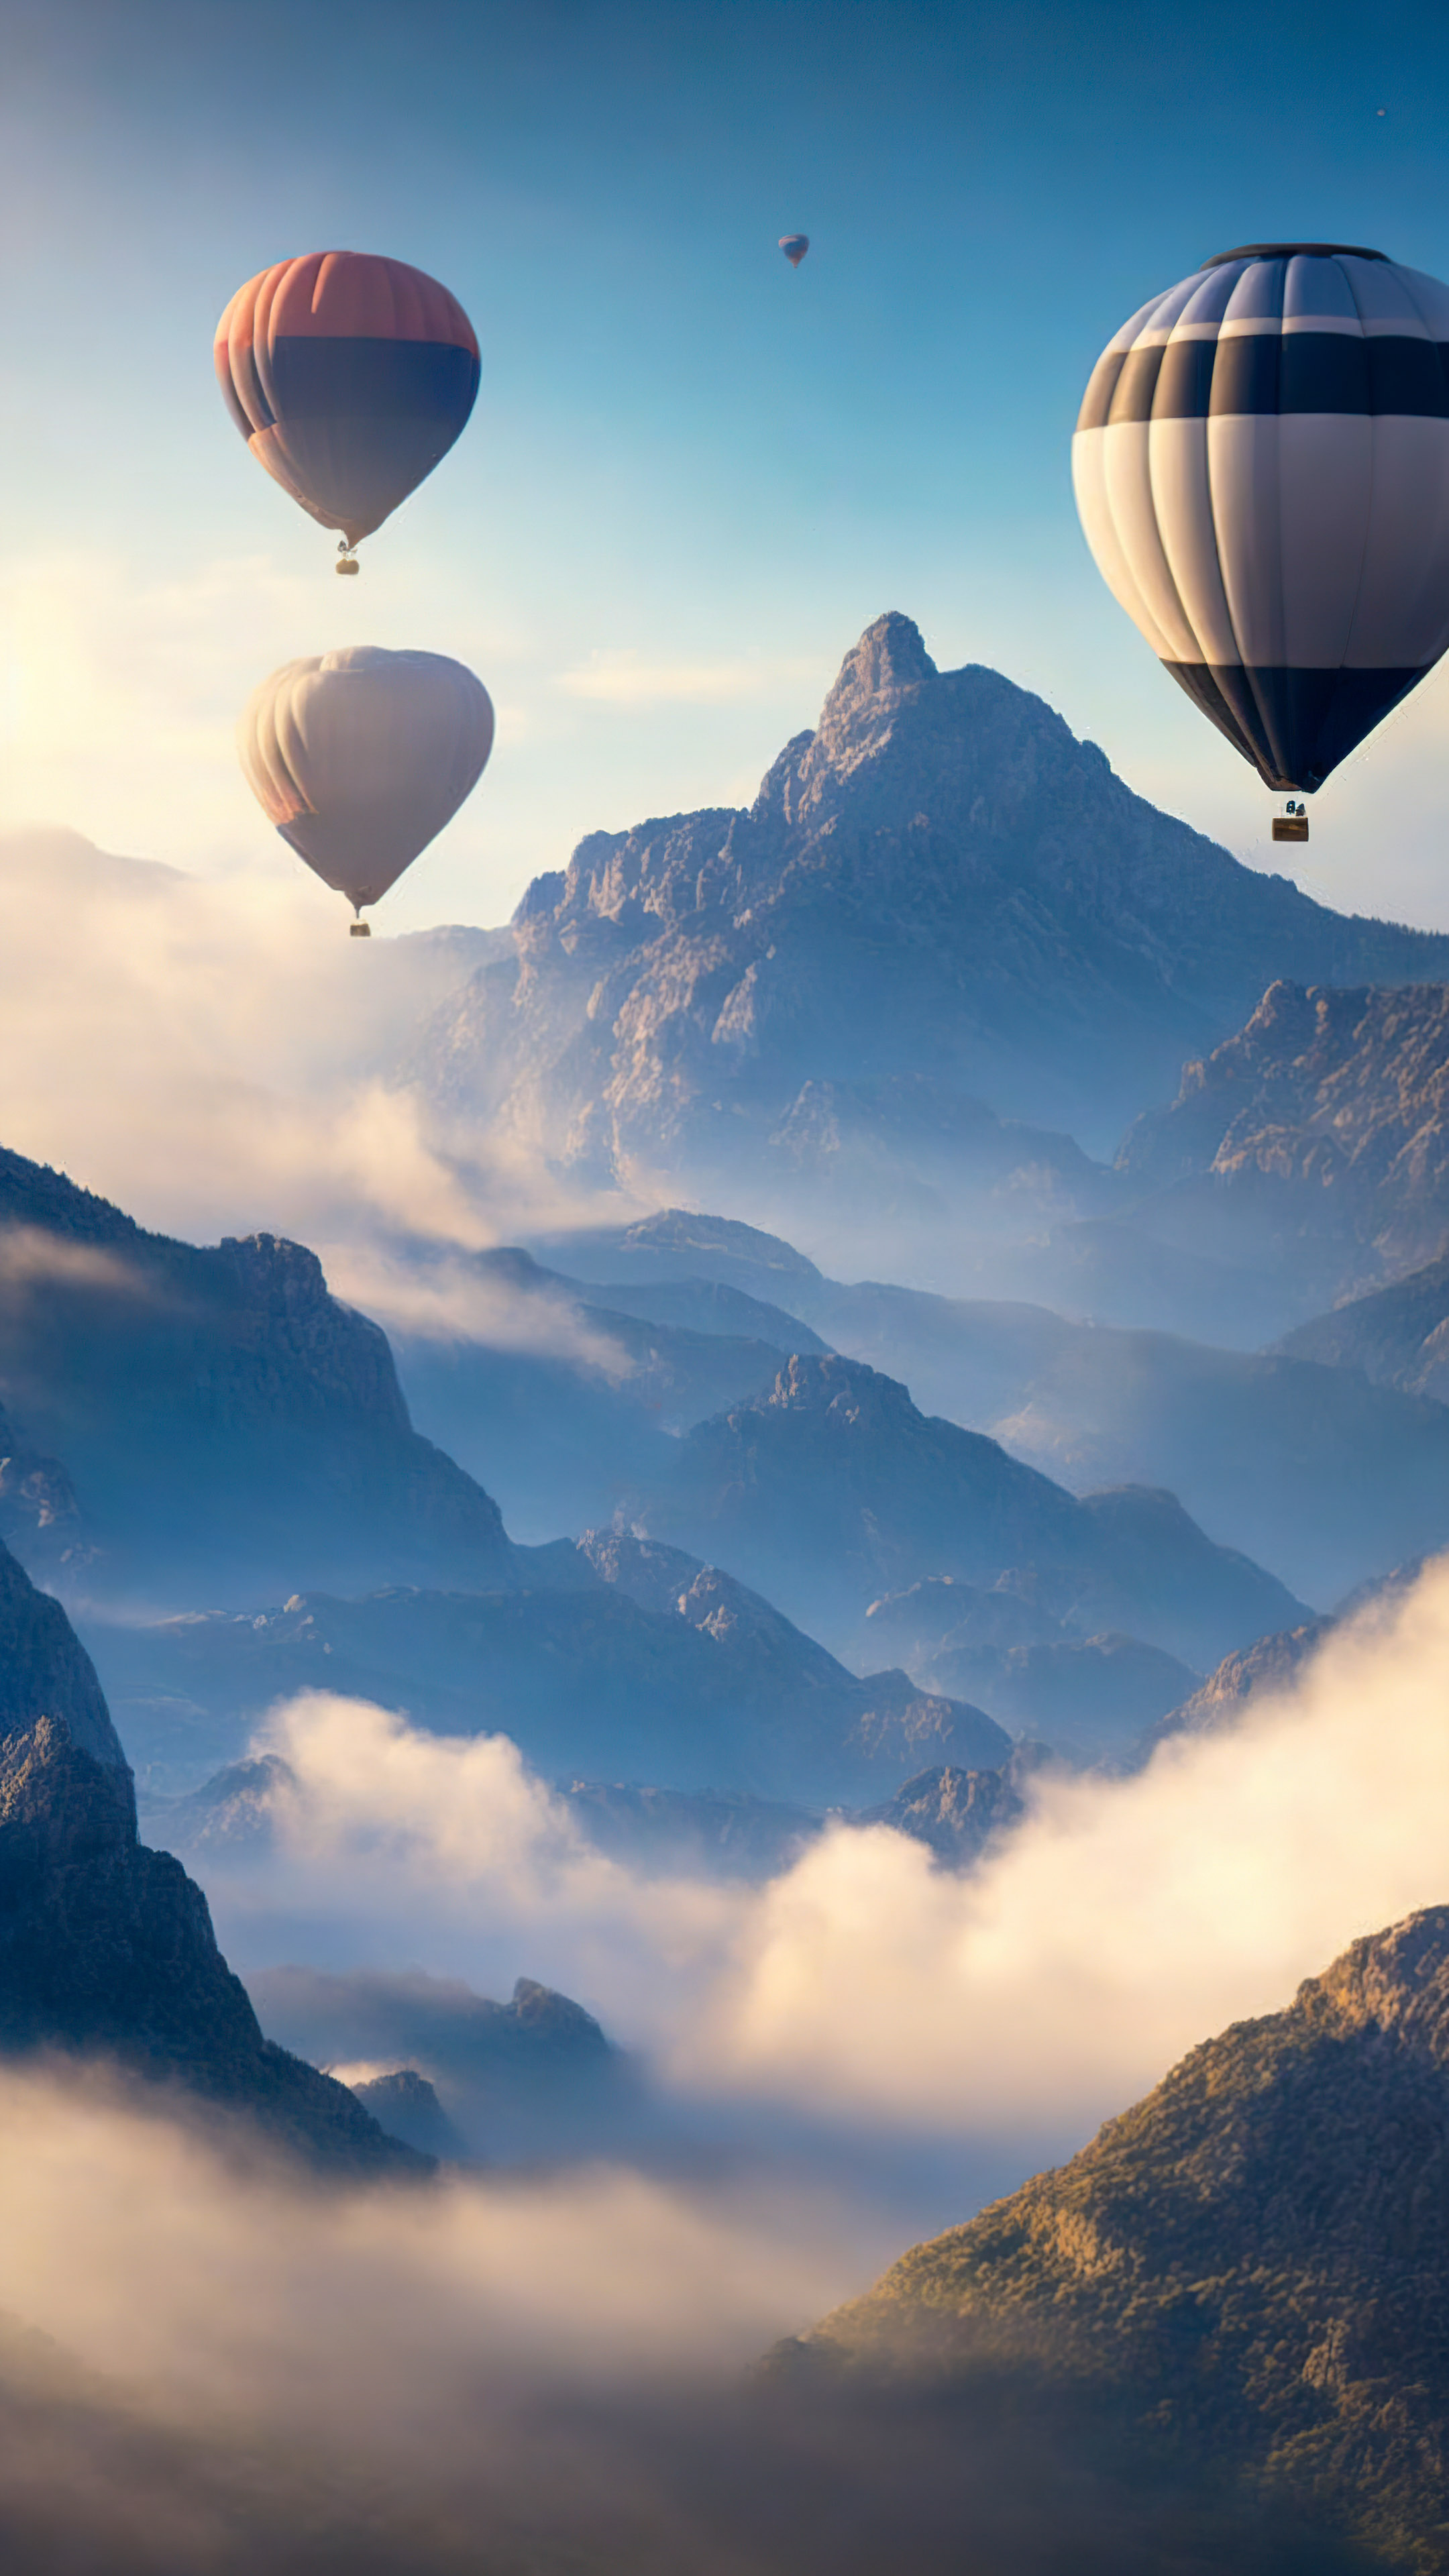 Obtenez une perspective surréelle avec notre fond d’écran de paysage pour iPhone, dépeignant un ciel rempli de montgolfières flottant paisiblement au-dessus d’un paysage montagneux brumeux. 